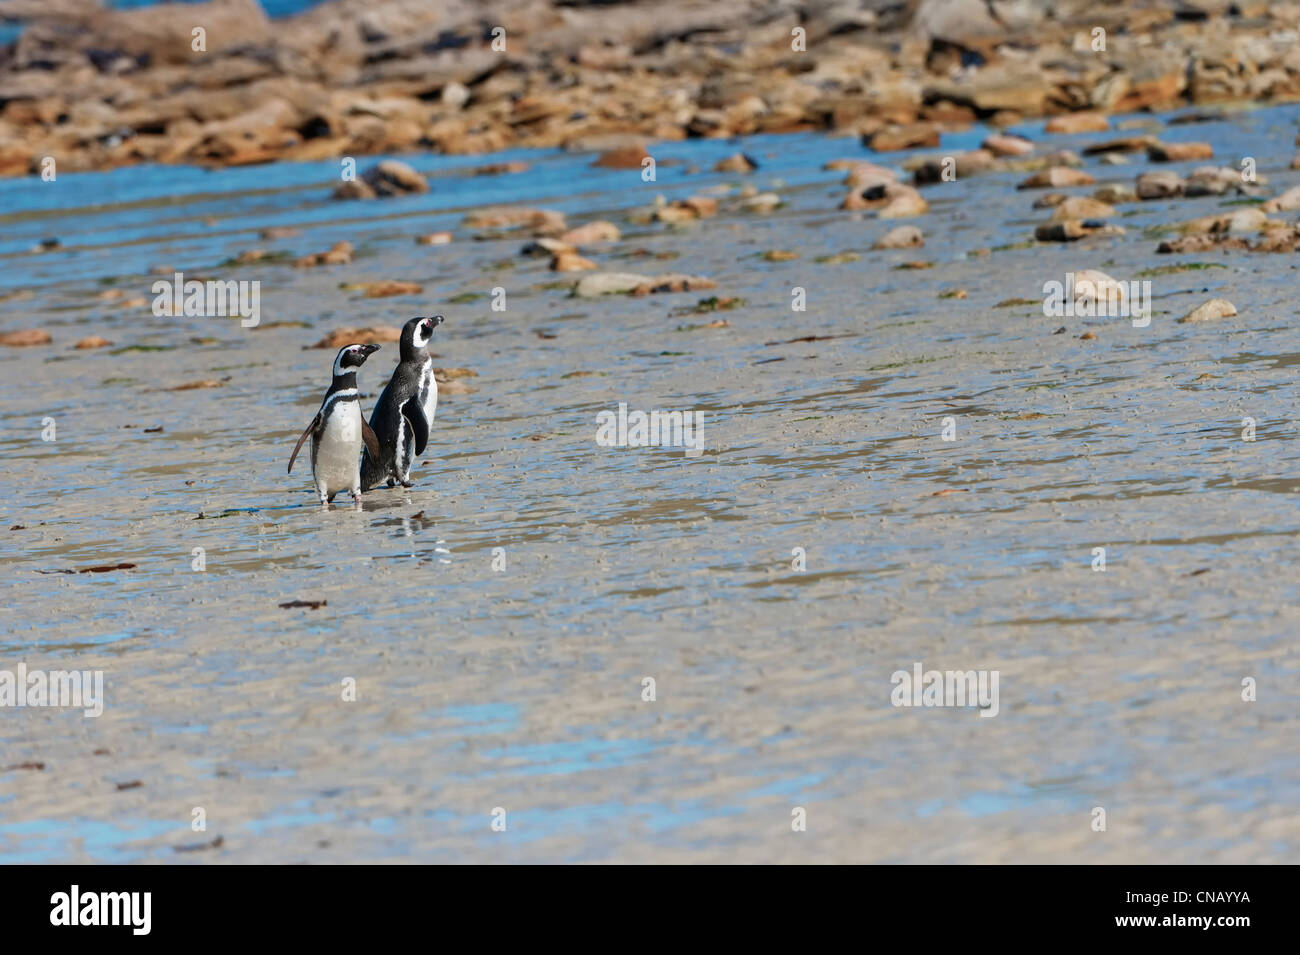 Two Magellanic penguins (Spheniscus magellanicus) on the shore, New Island, Falkland Islands Stock Photo